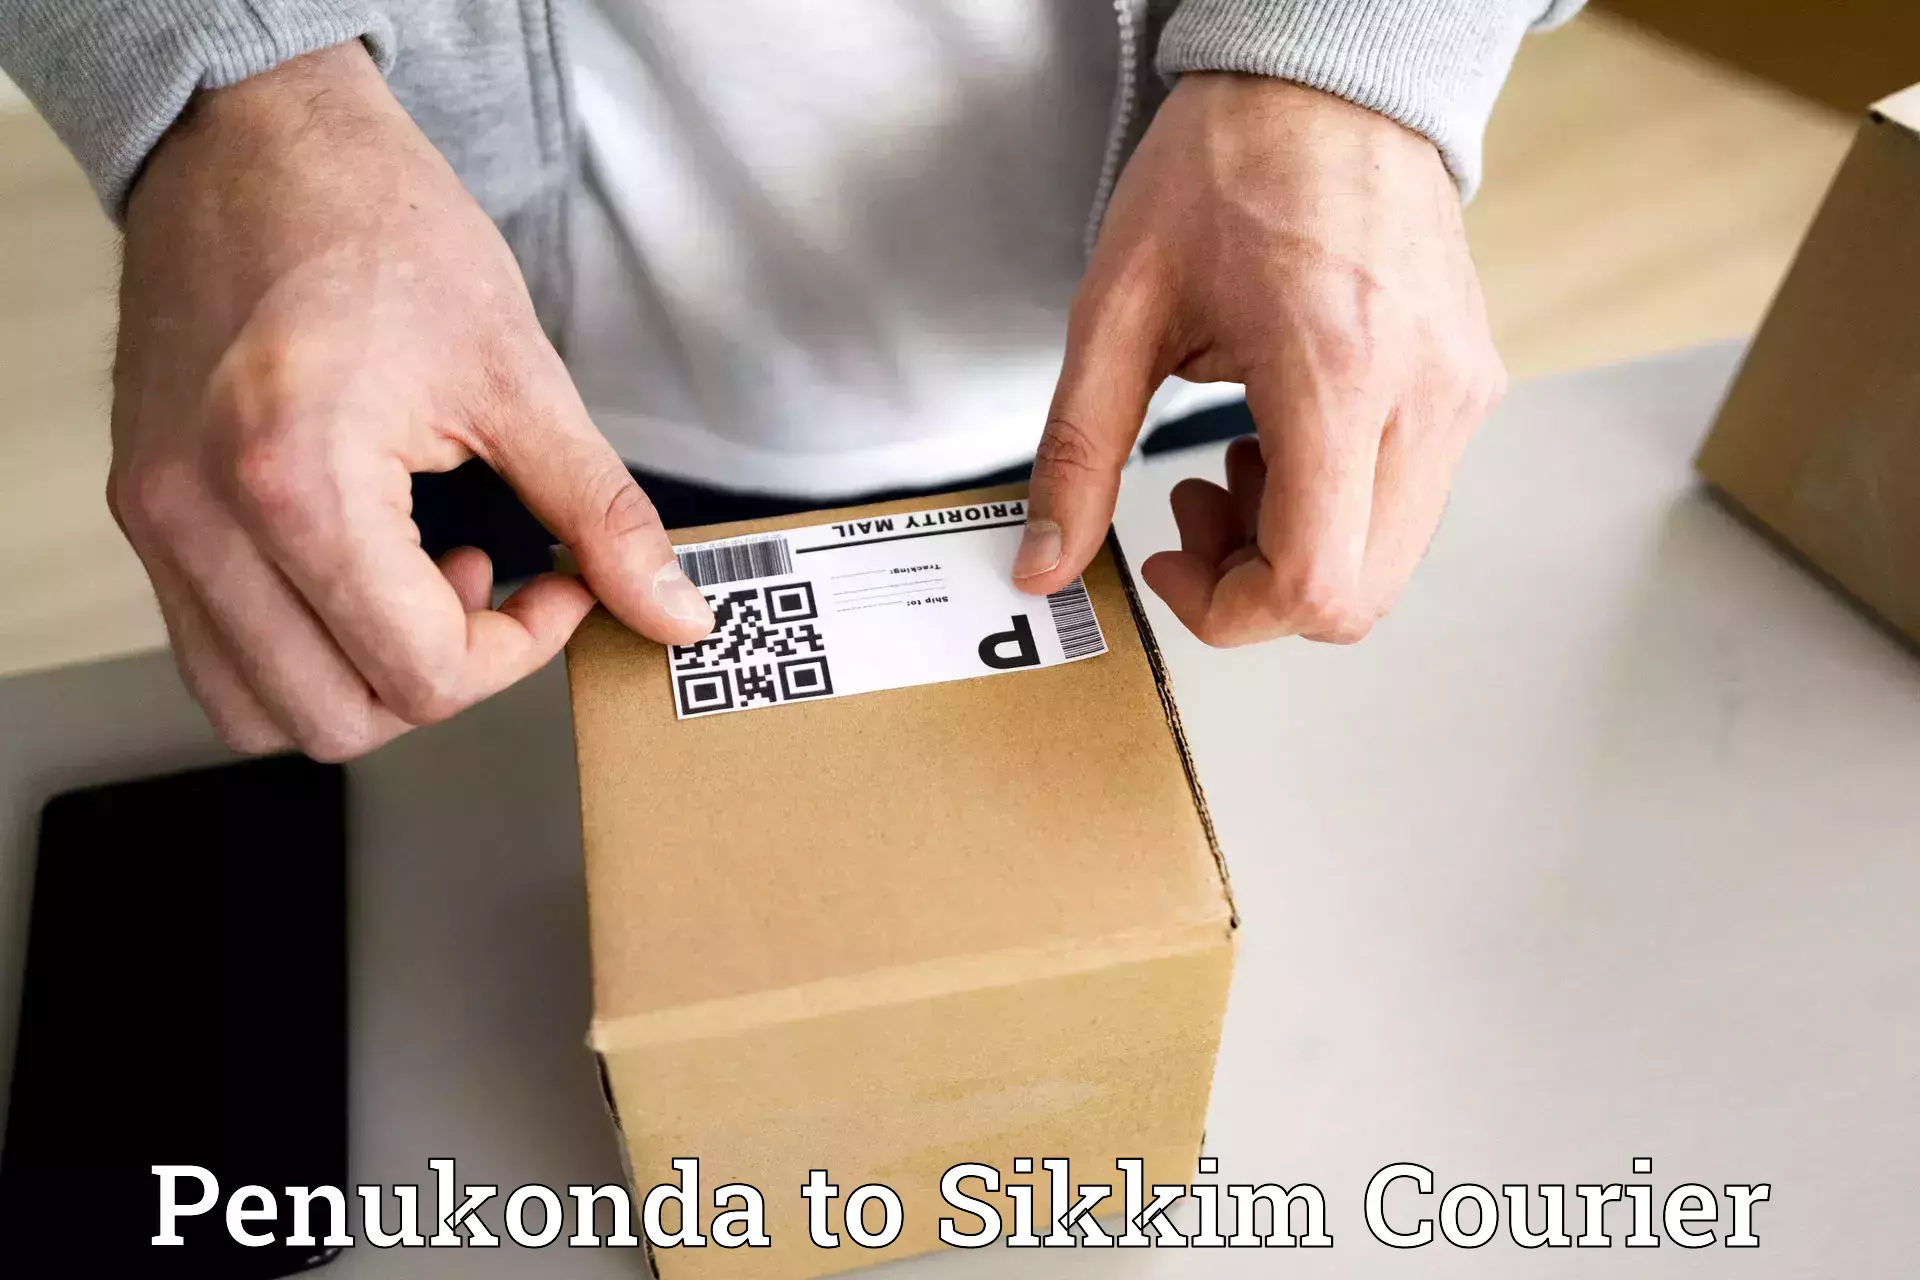 Logistics service provider Penukonda to NIT Sikkim